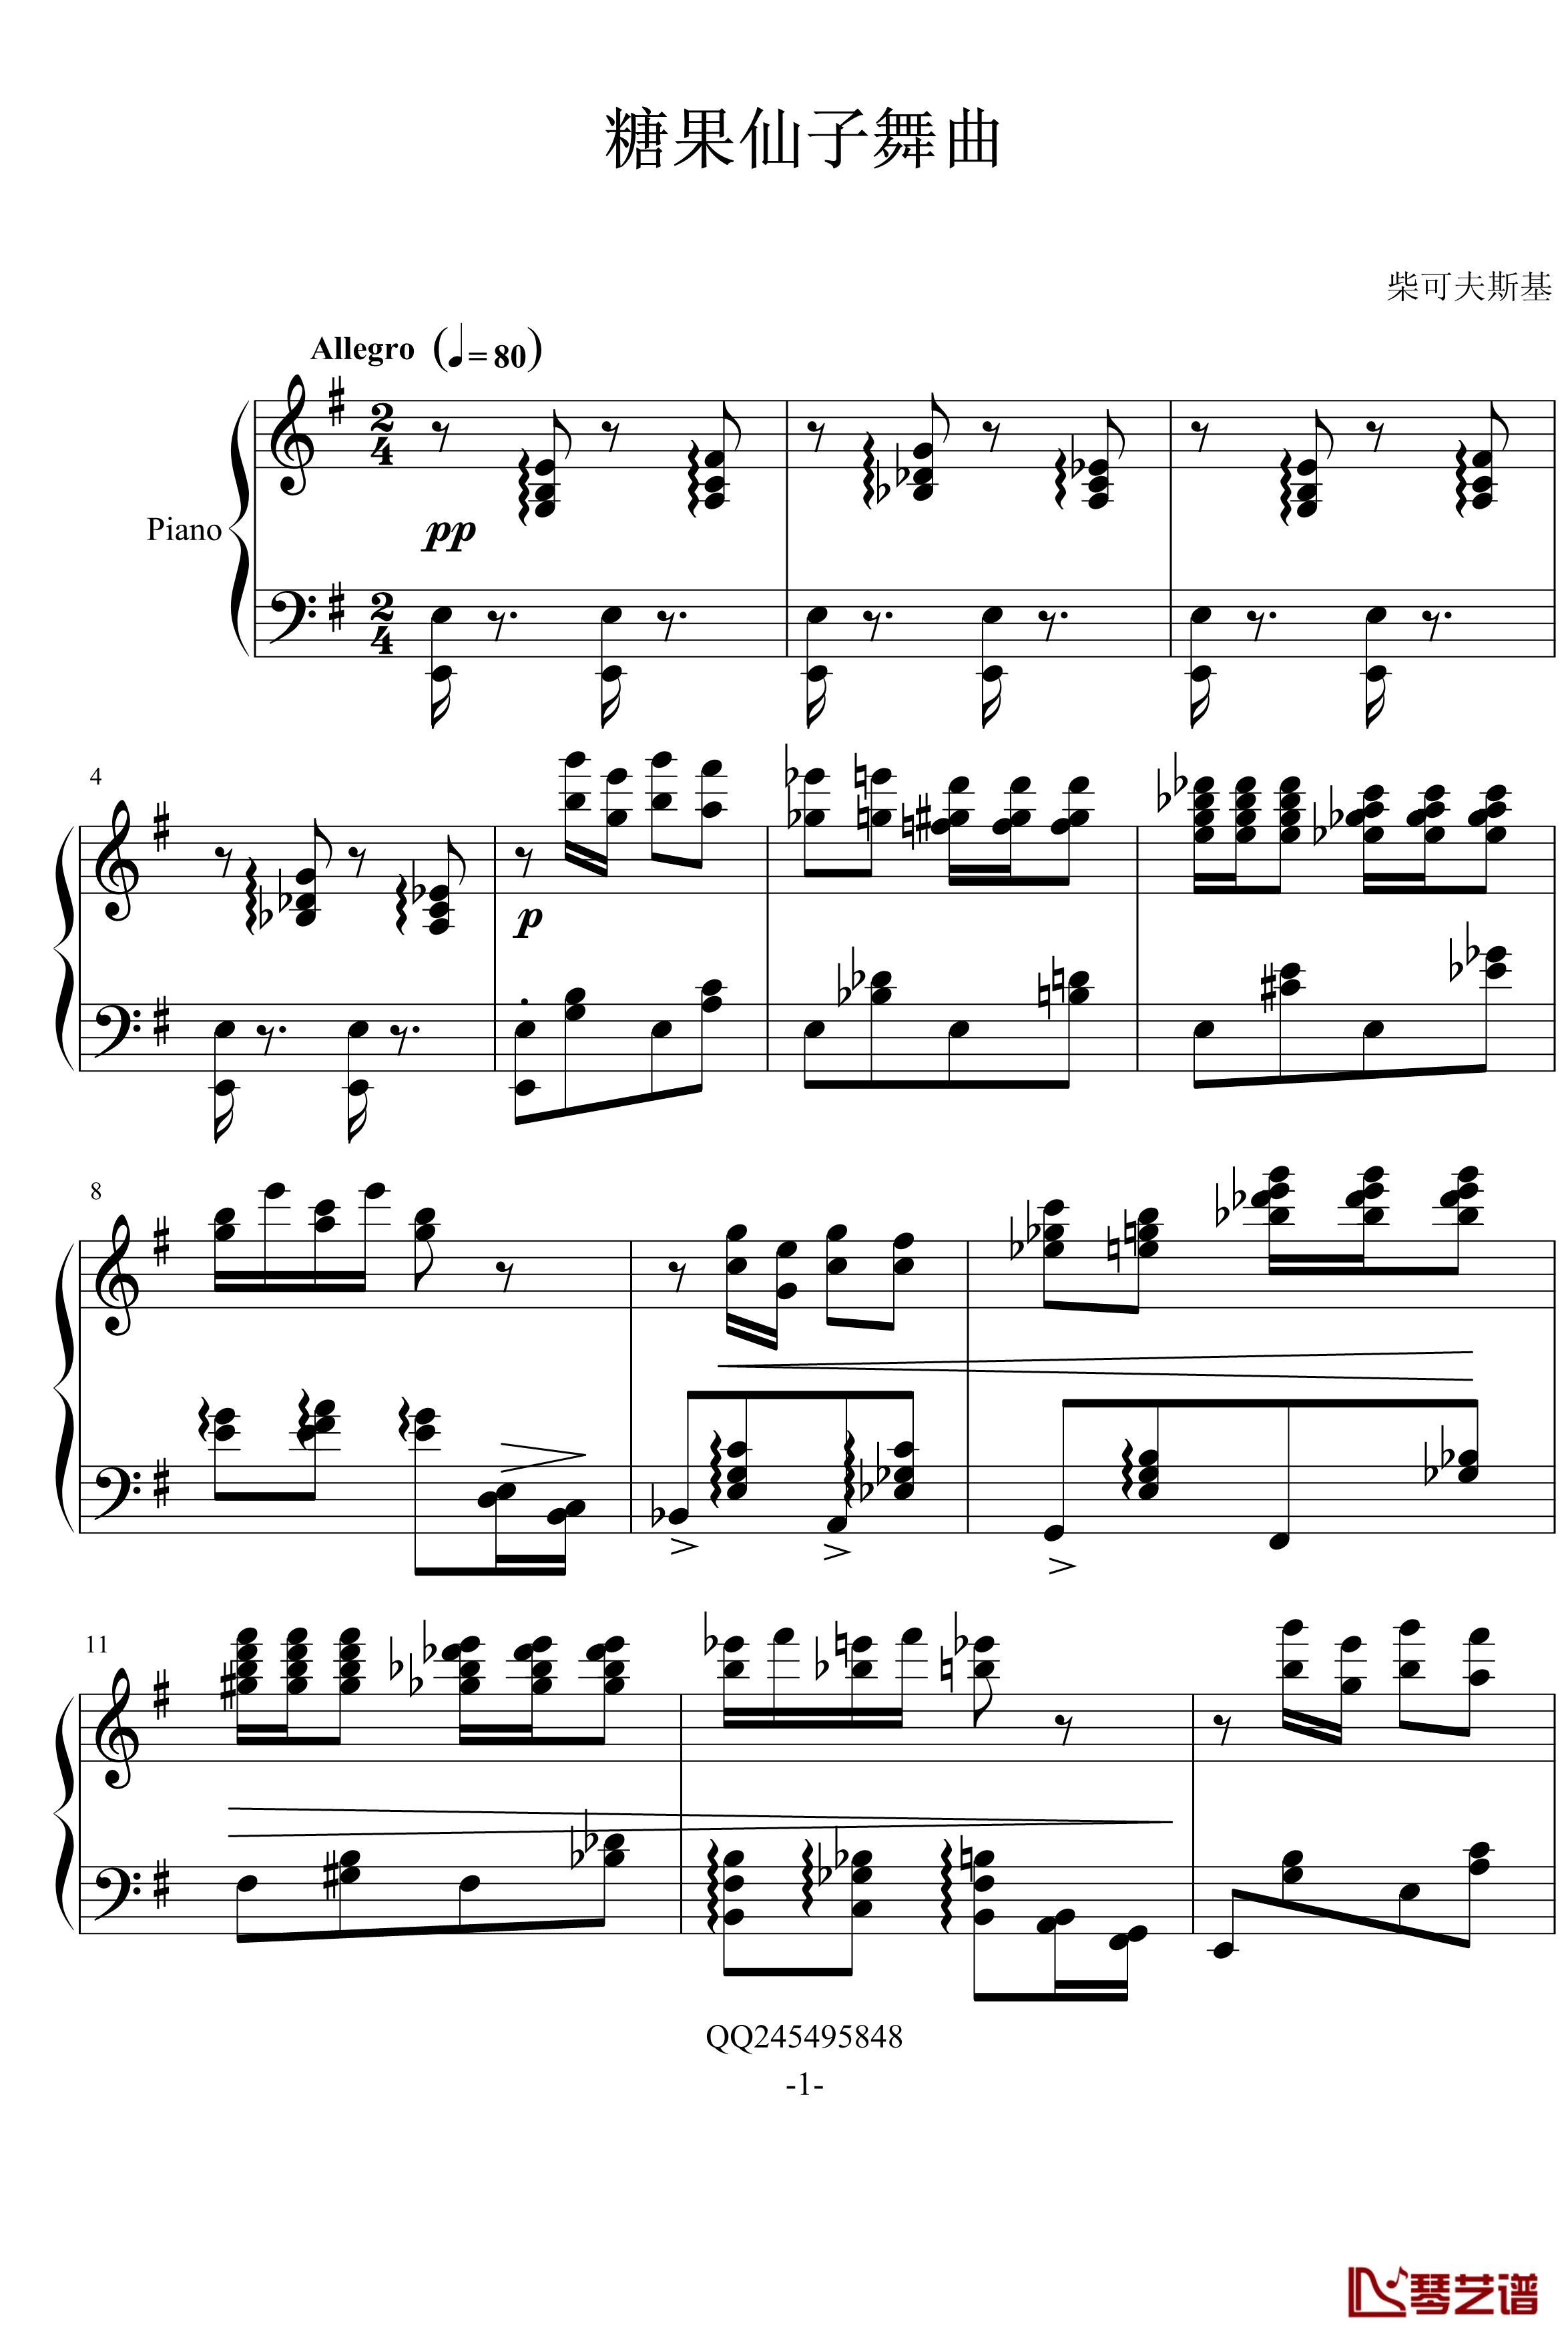 糖果仙子舞曲钢琴谱-柴科夫斯基-Peter Ilyich Tchaikovsky